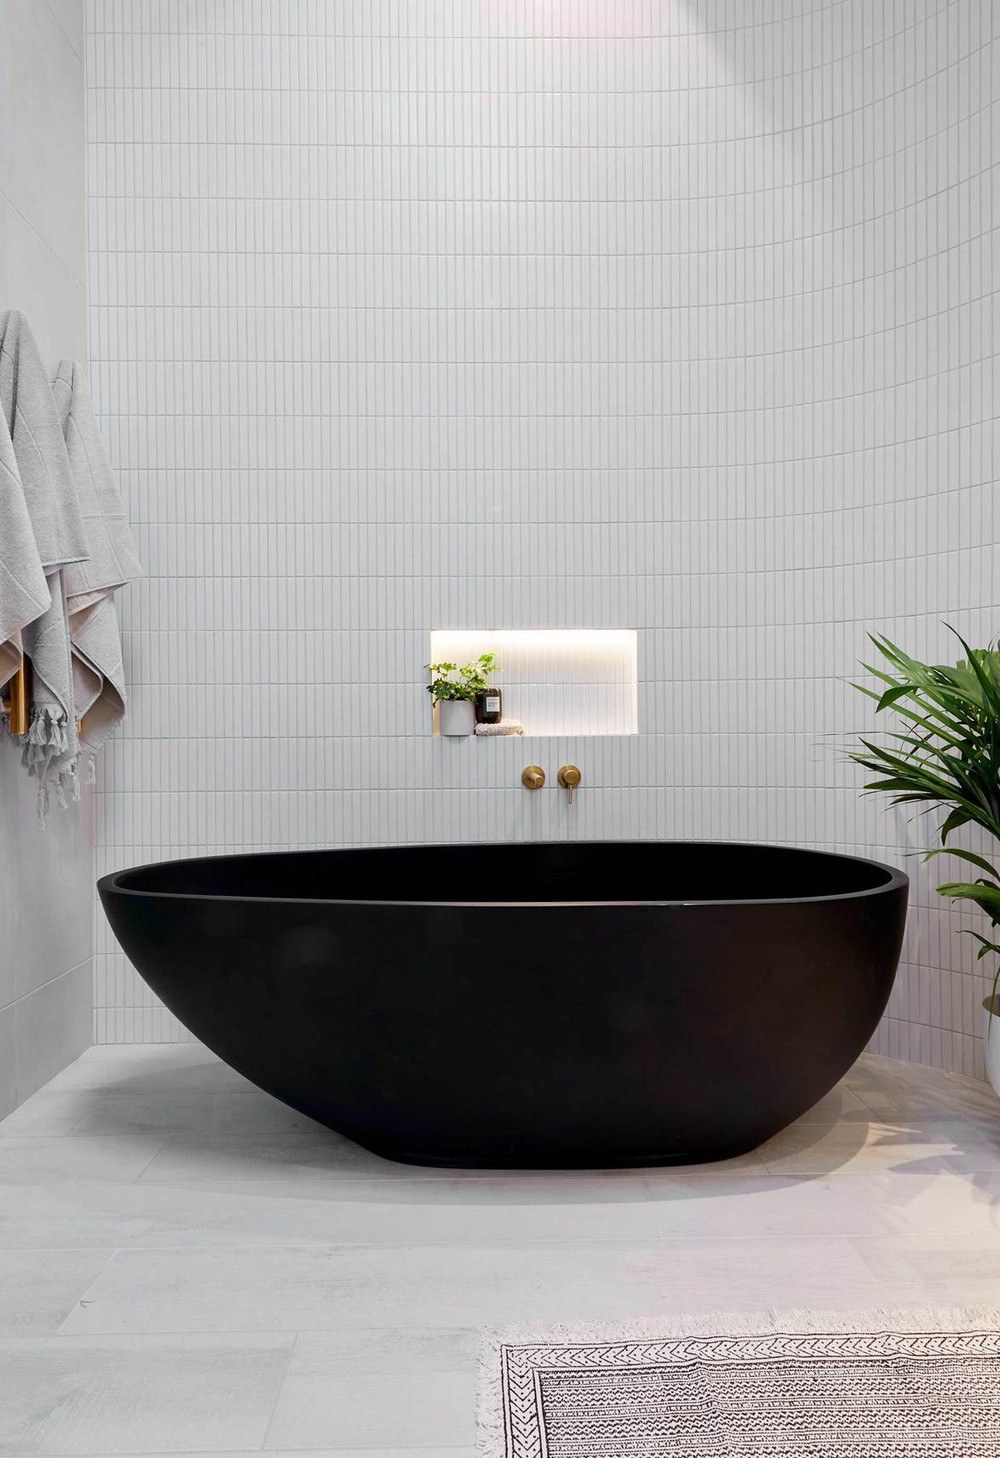 Tha hồ gom nhặt ý tưởng cho căn phòng tắm gia đình với những thiết kế ấn tượng - Ảnh 6.